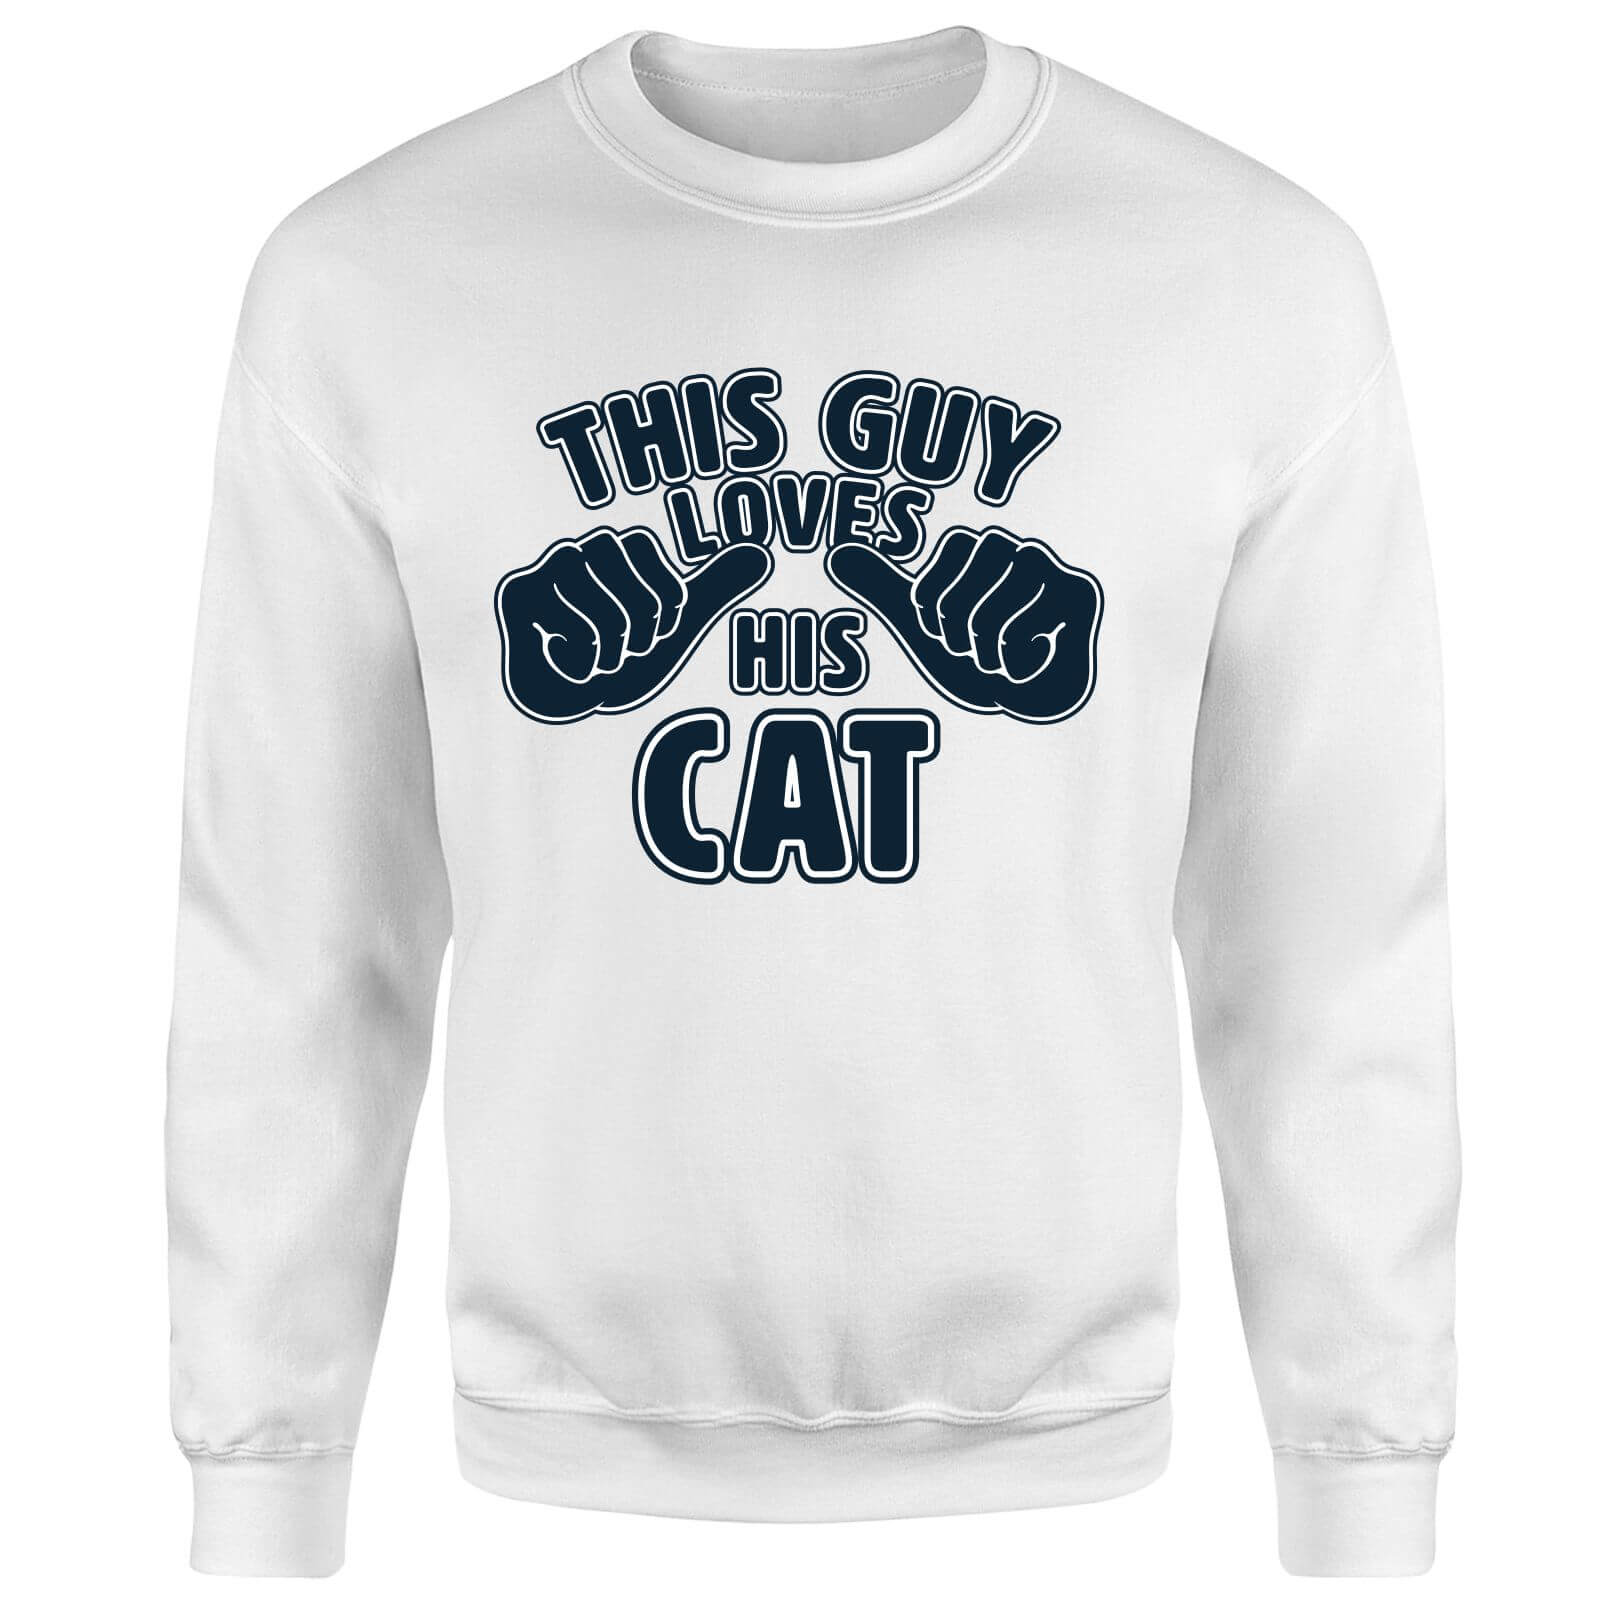 This Guy Loves His Cat Sweatshirt - White - S - White